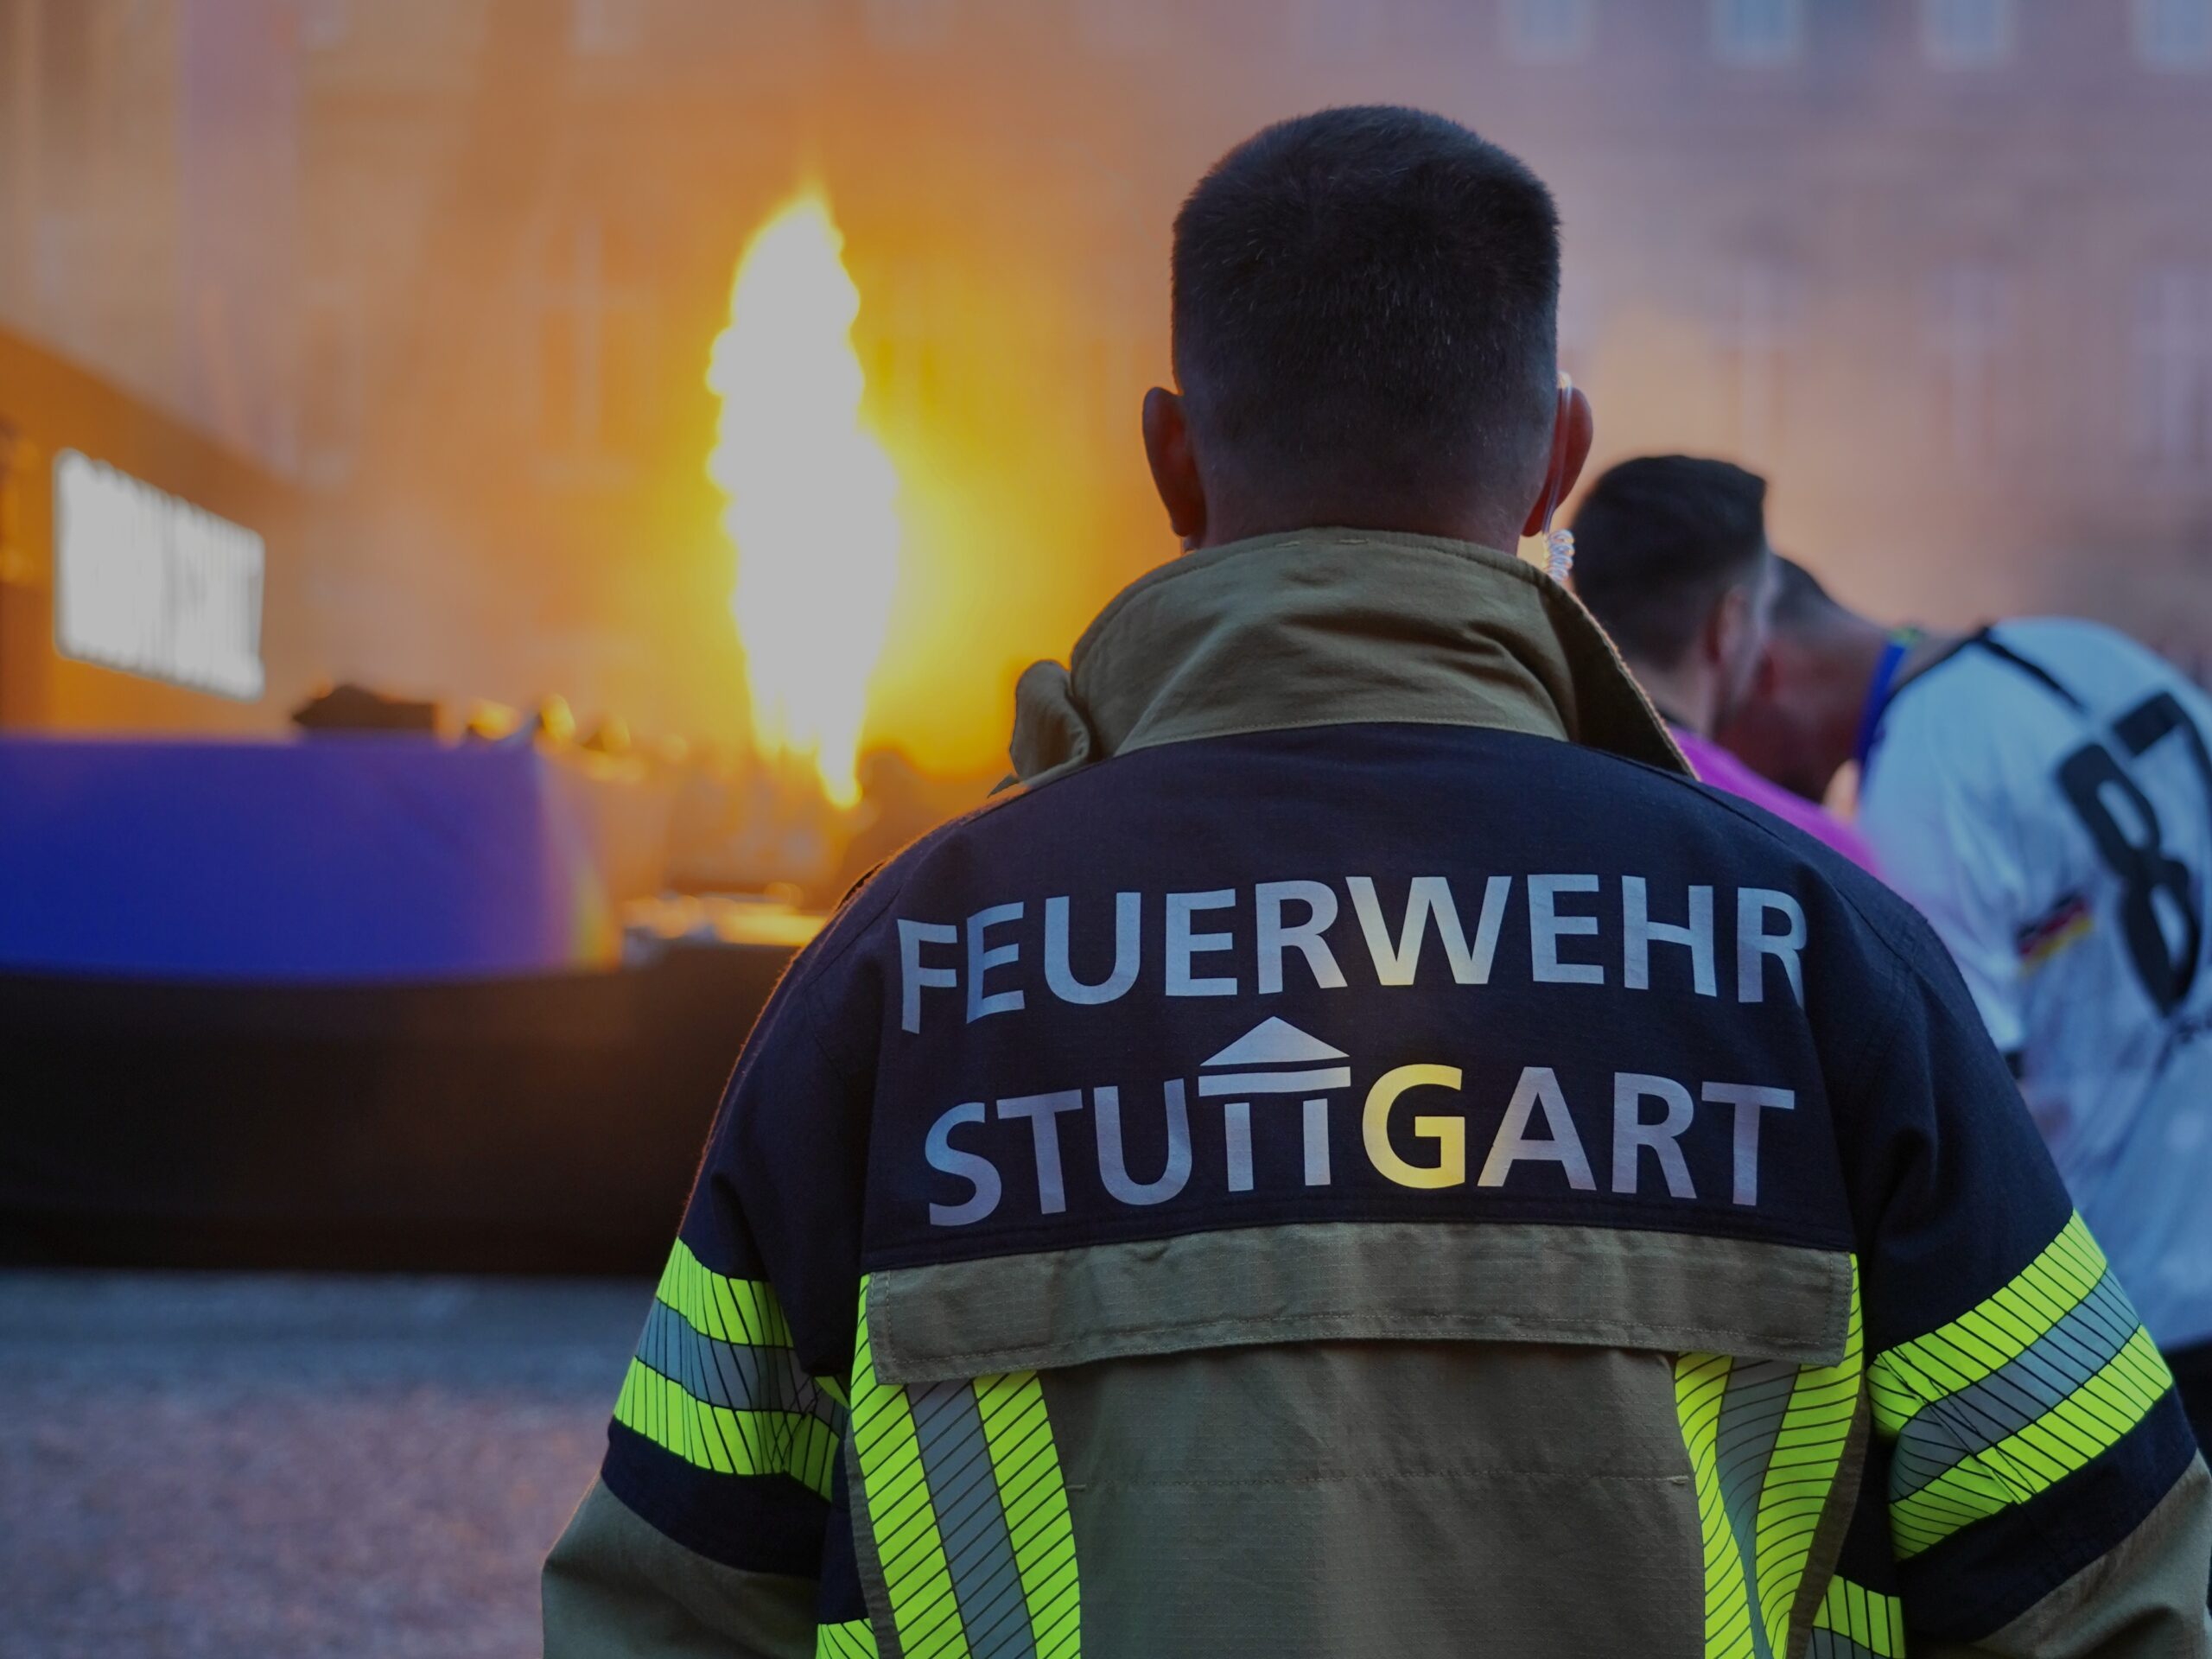 Stuttgart: UEFA EURO 2024 - Feuerwehr Stuttgart ist gut vorbereitet